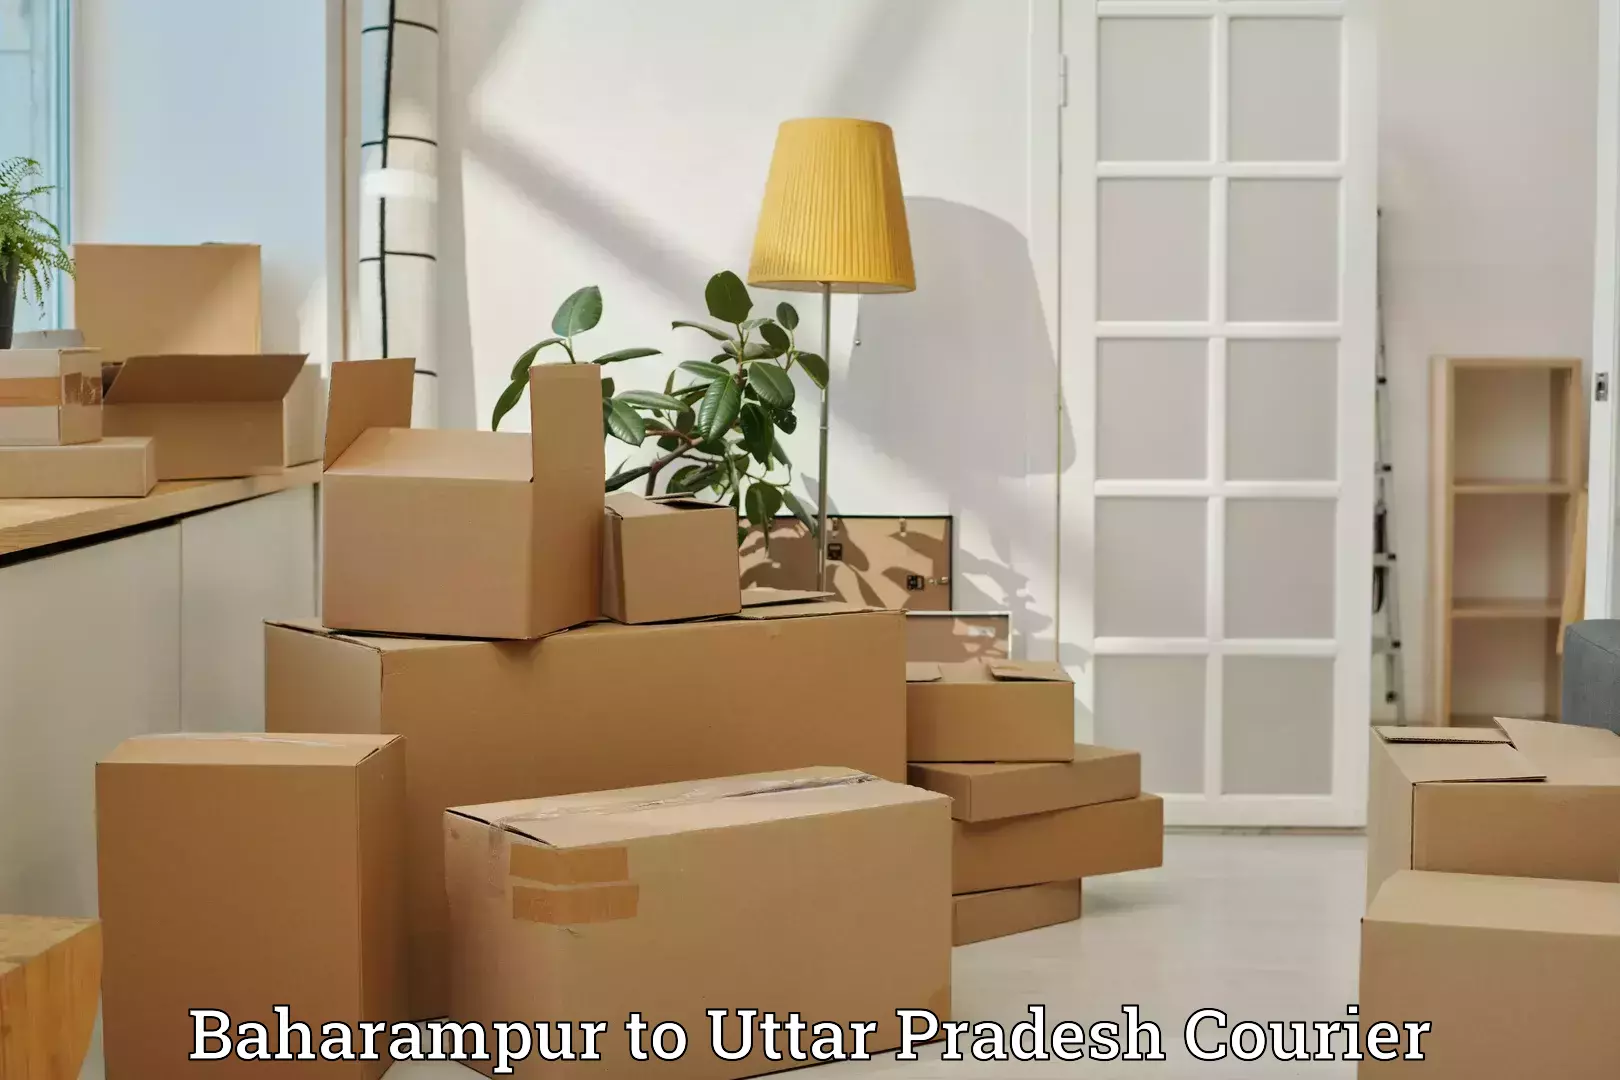 Baggage delivery technology Baharampur to Banaras Hindu University Varanasi